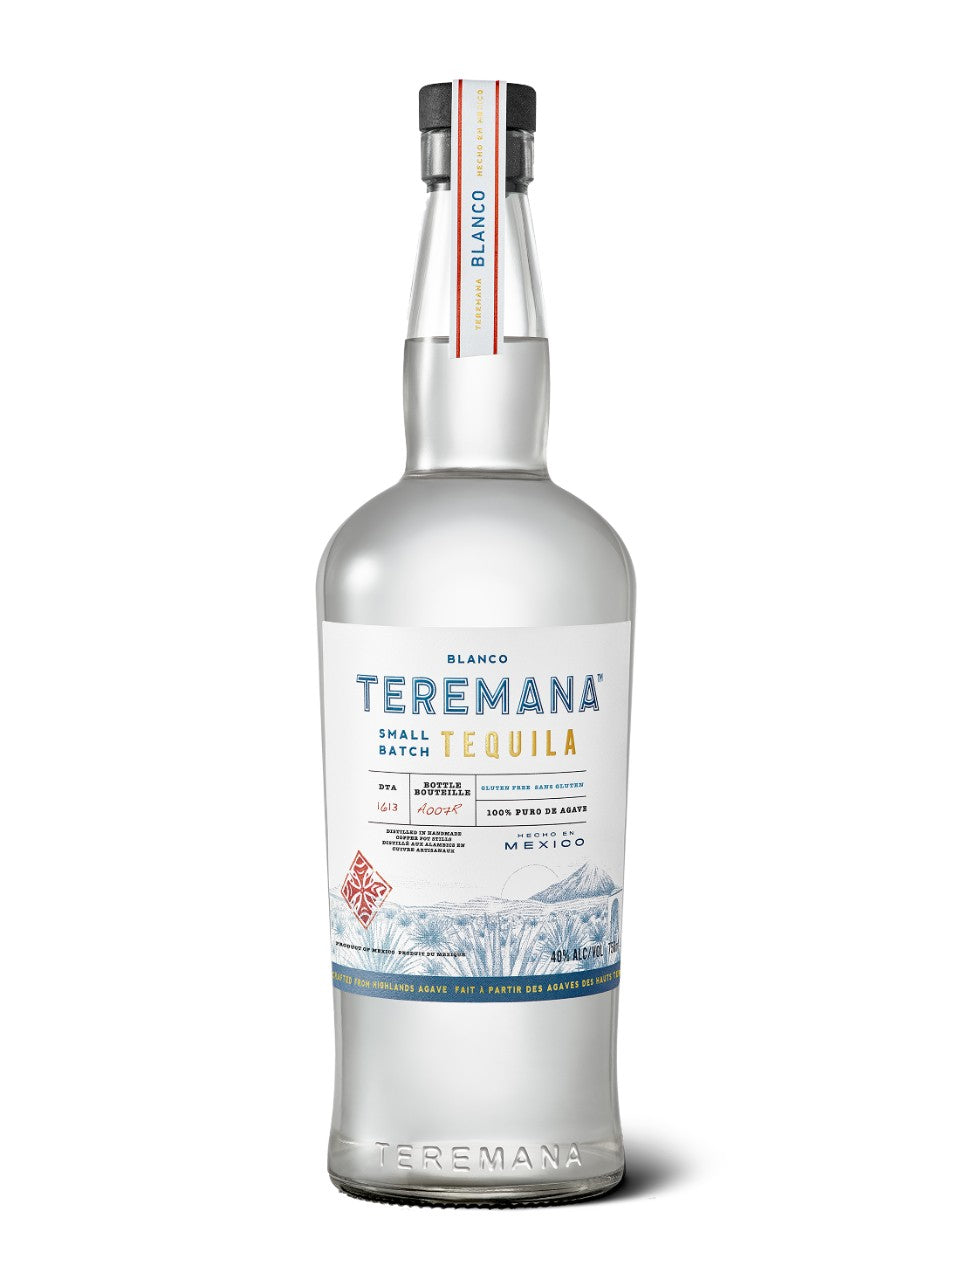 Teremana Blanco Tequila 750 mL bottle